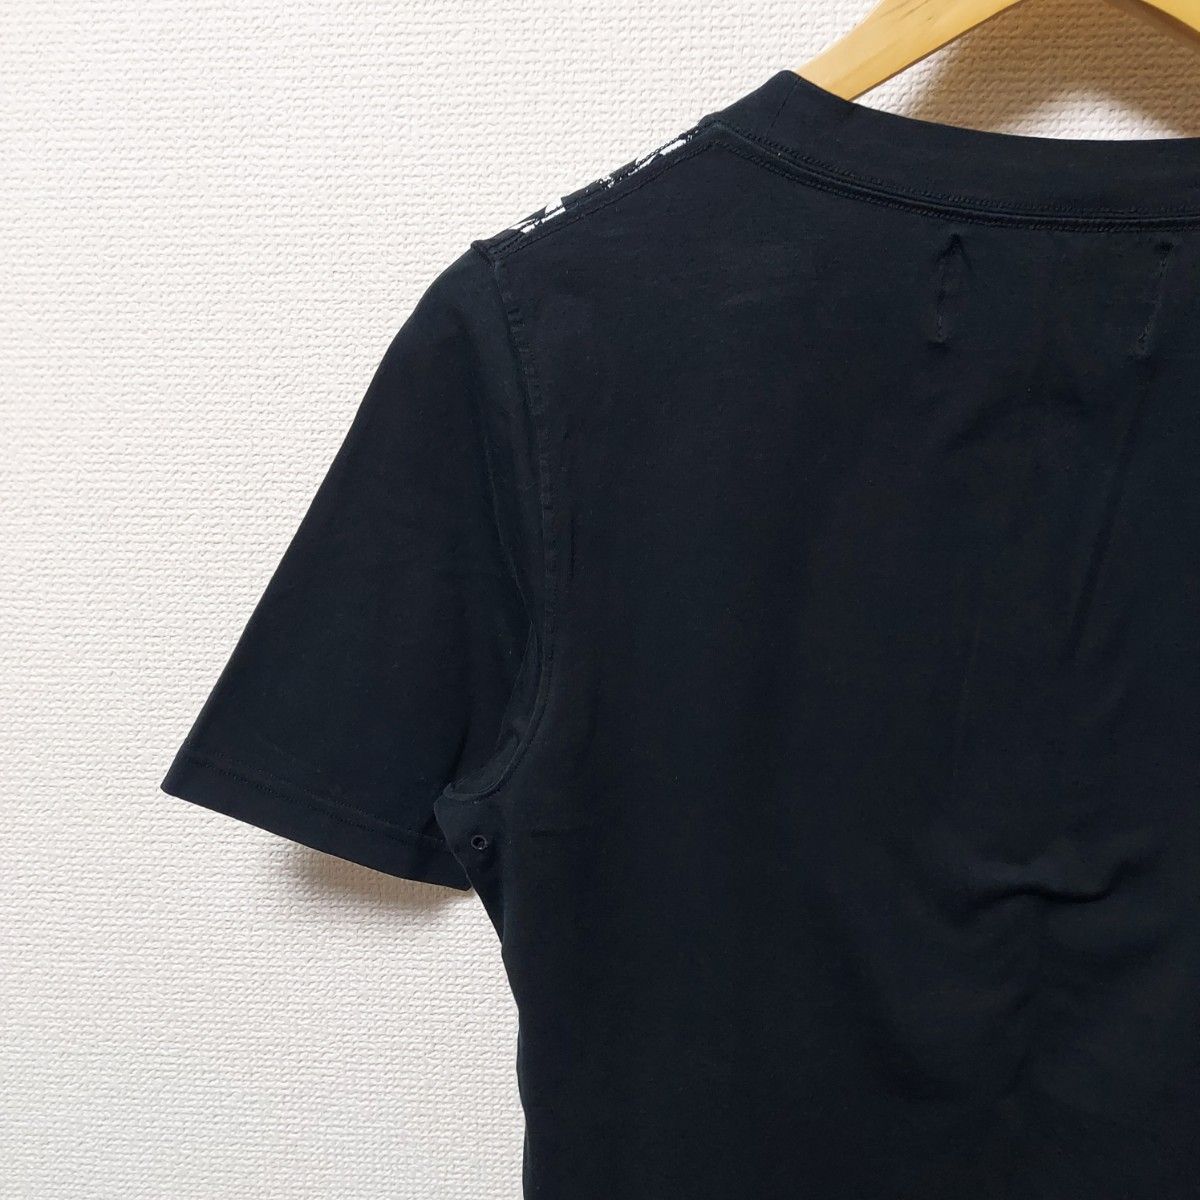 Roen　ロエン　メンズ　サイズ46　Tシャツ　半袖　シャツ　ストレッチあり　